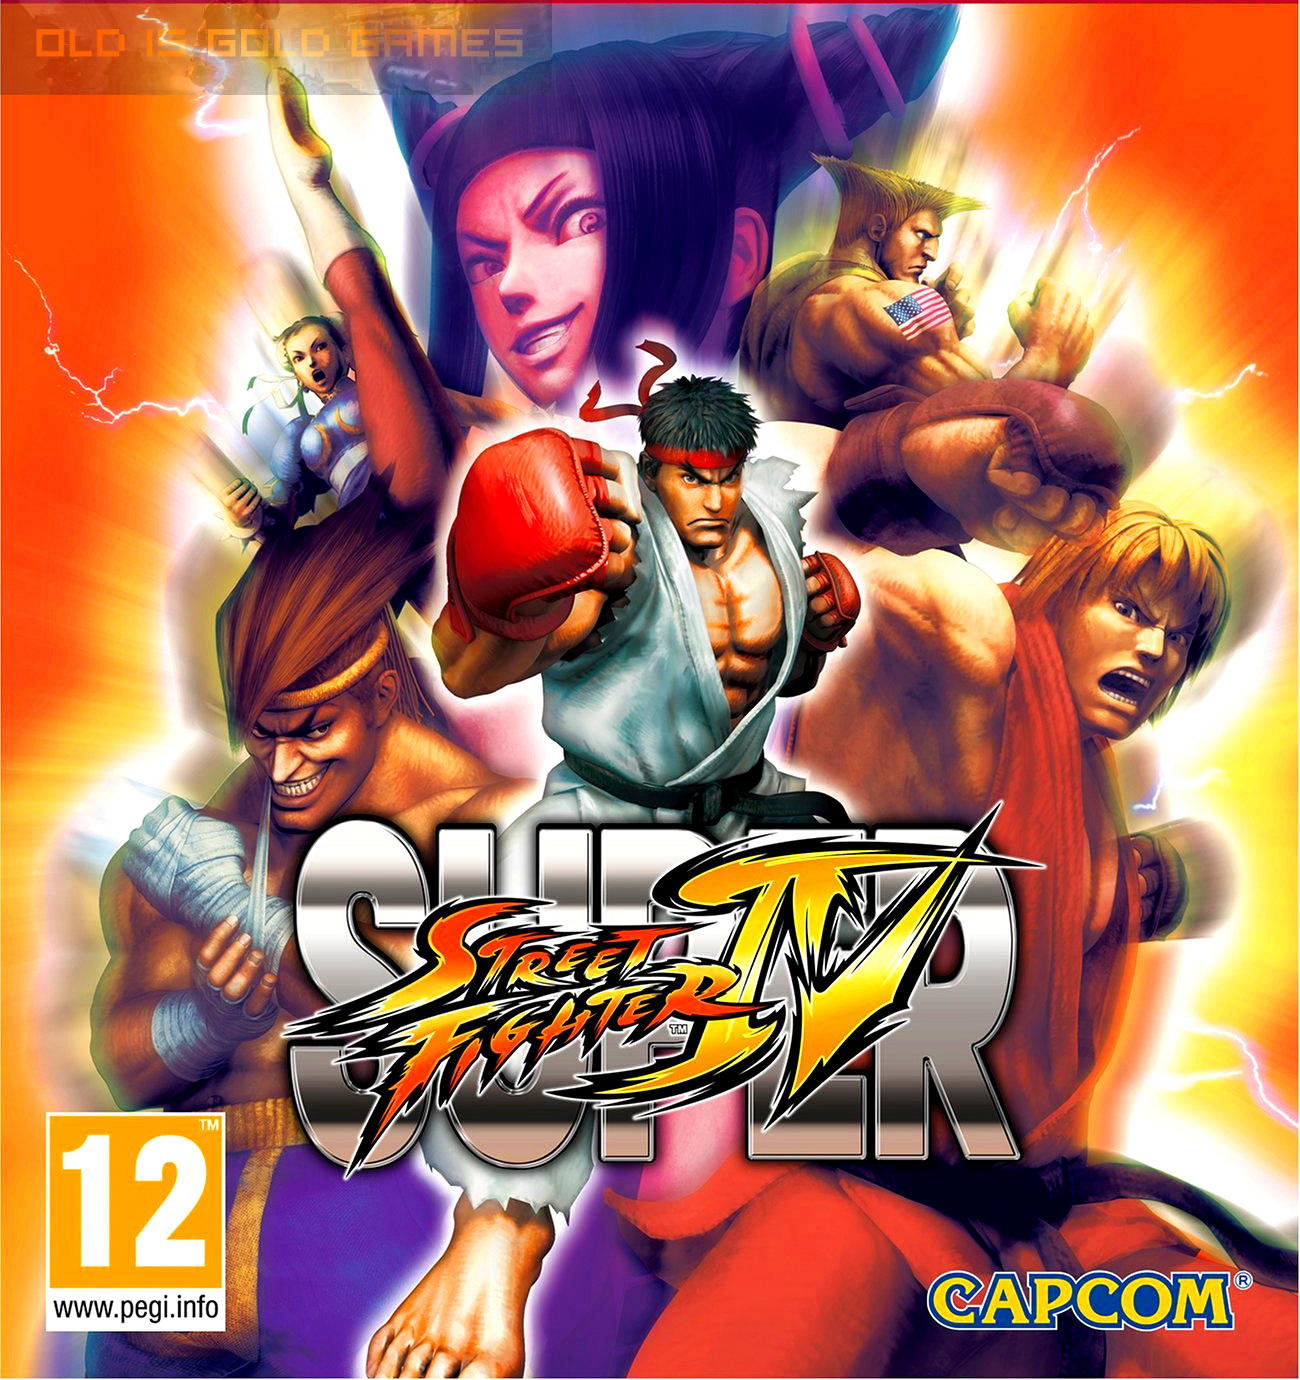 Super Street Fighter IV Free Download